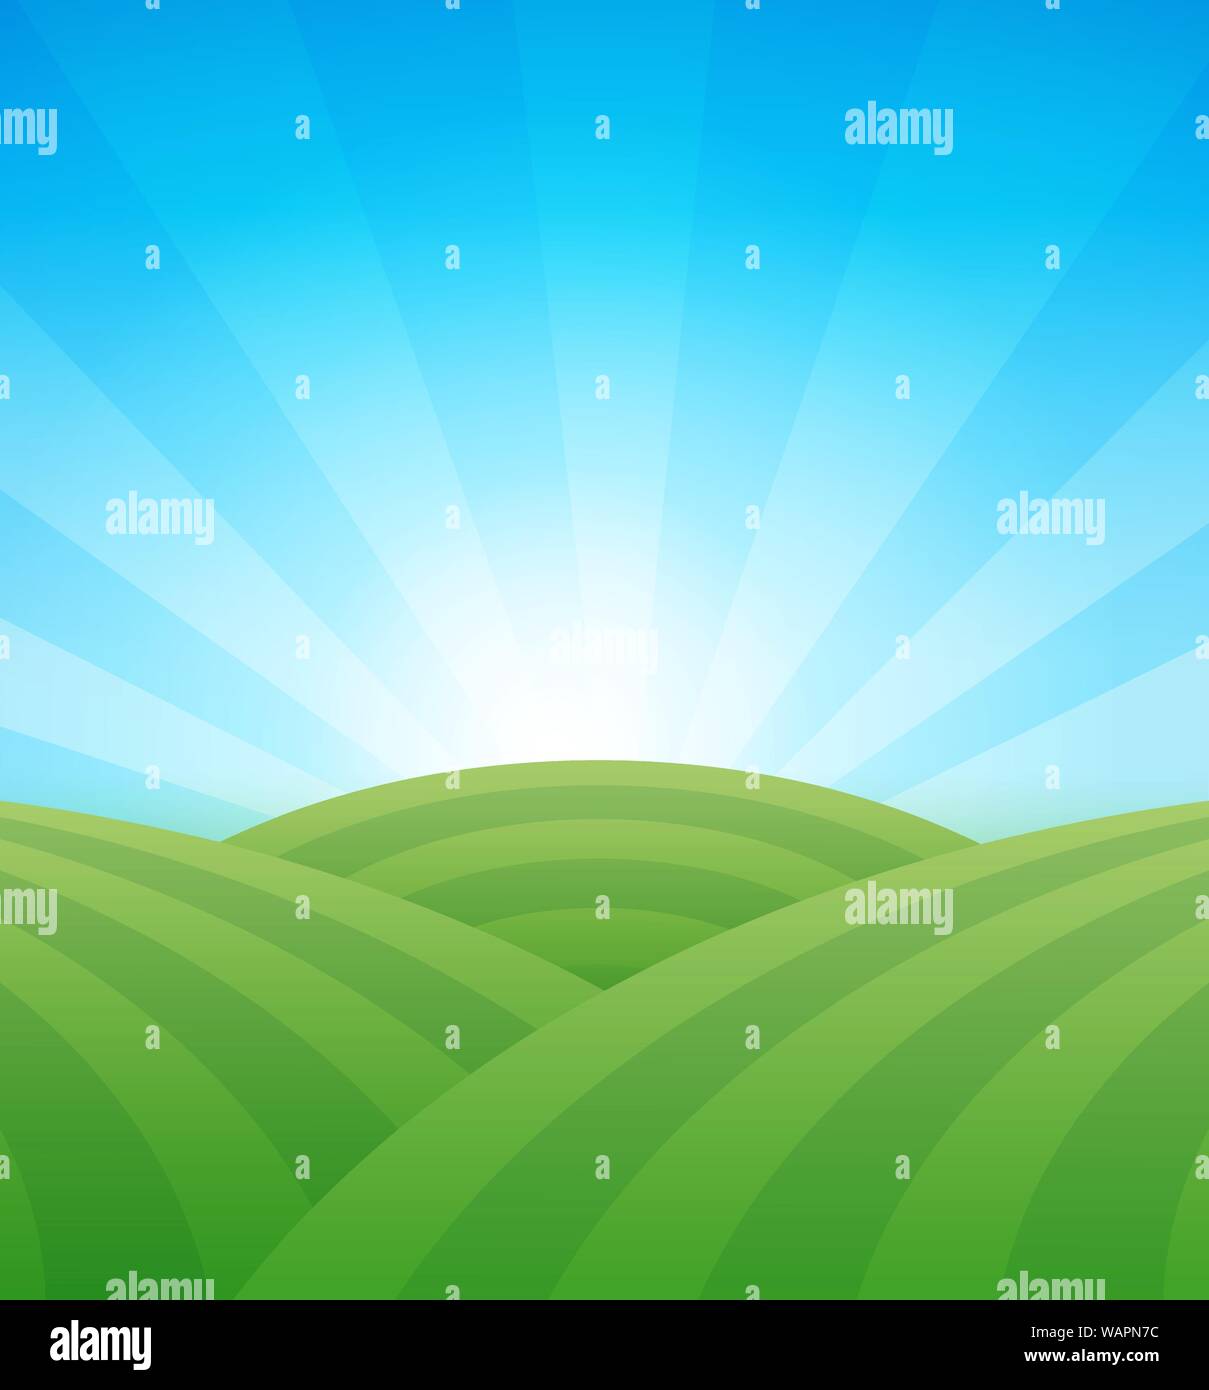 Ferme des champs verts avec des collines sous clair bleu ciel d'été - vector illustration colorée de l'agriculture. Paysage rural avec l'exemplaire de l'espace. Illustration de Vecteur